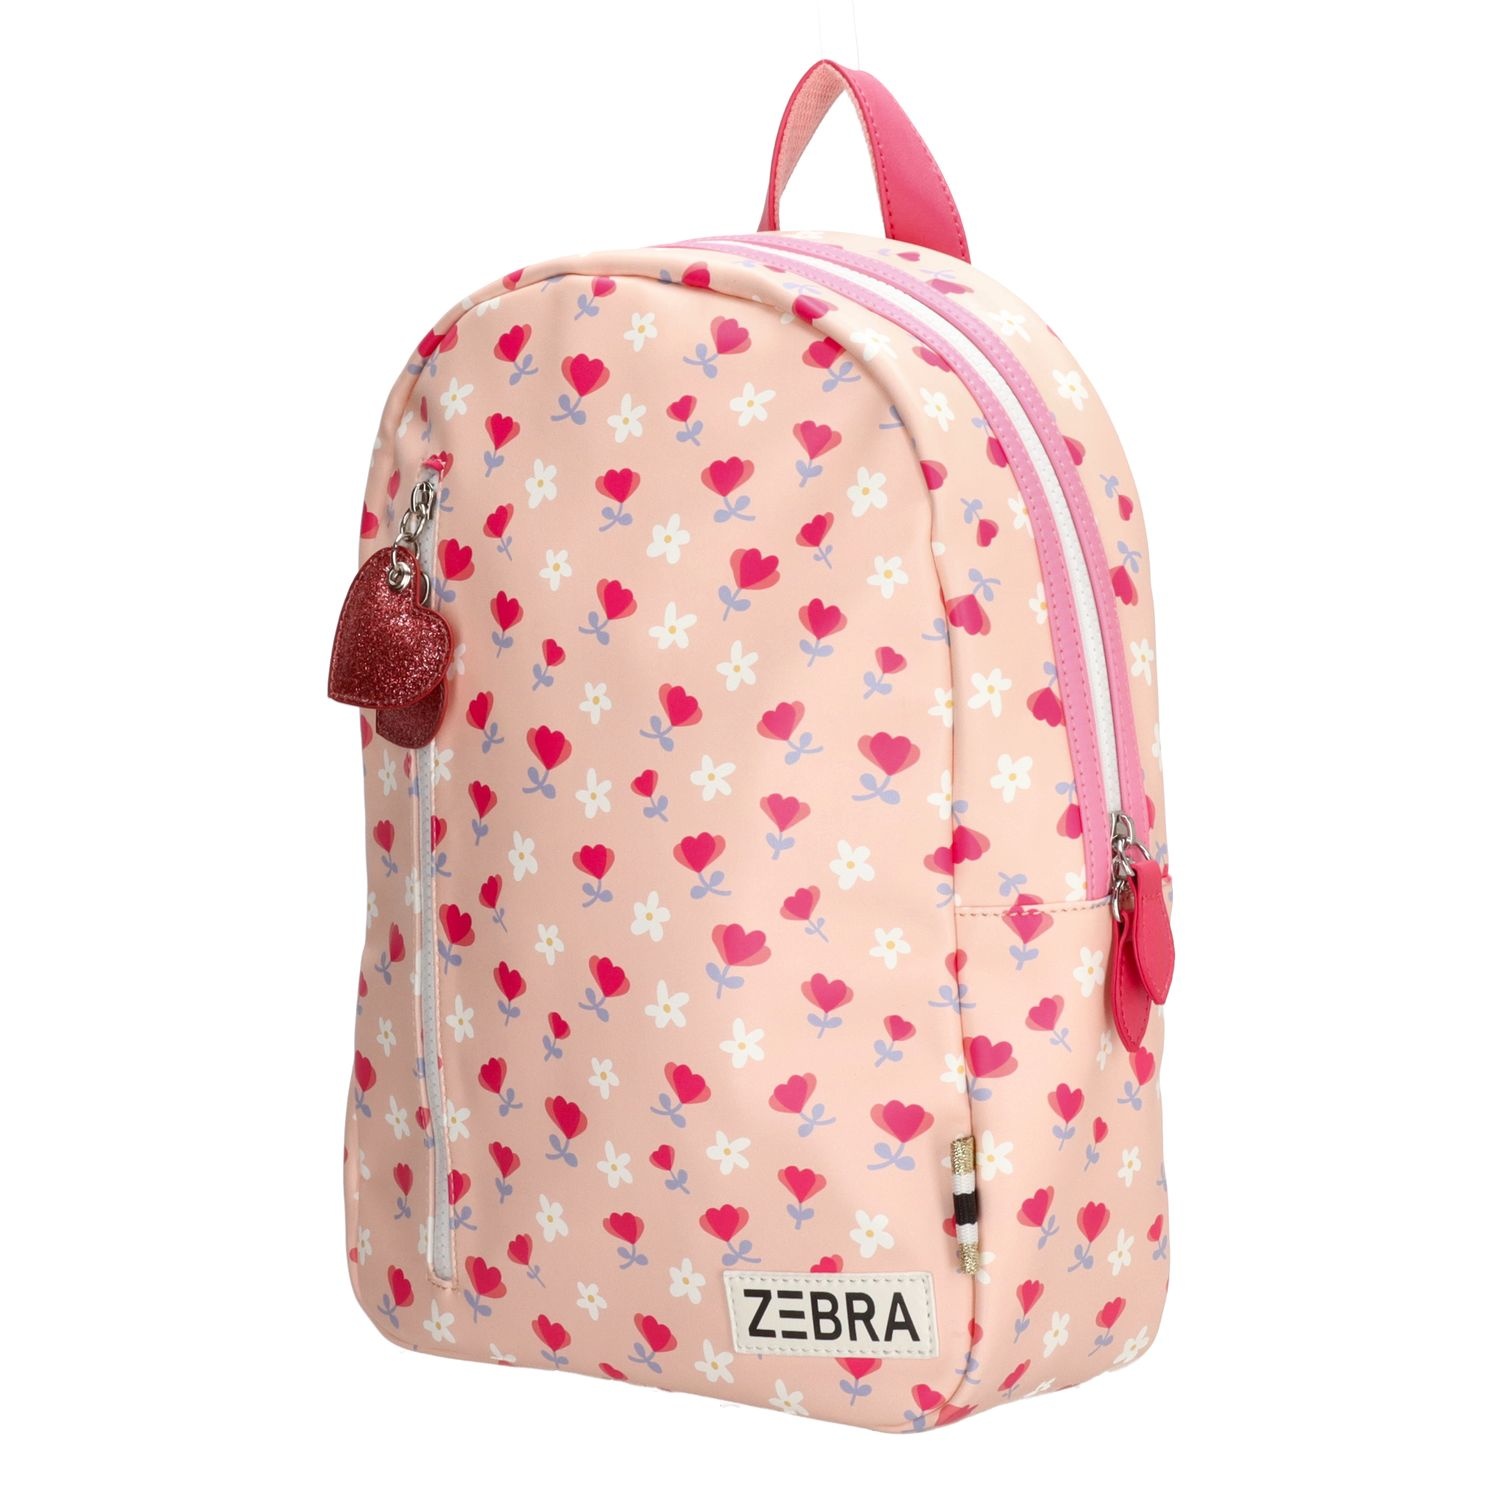 Zebra Meisjes rugzak (M) - Roze hartjes bloemen